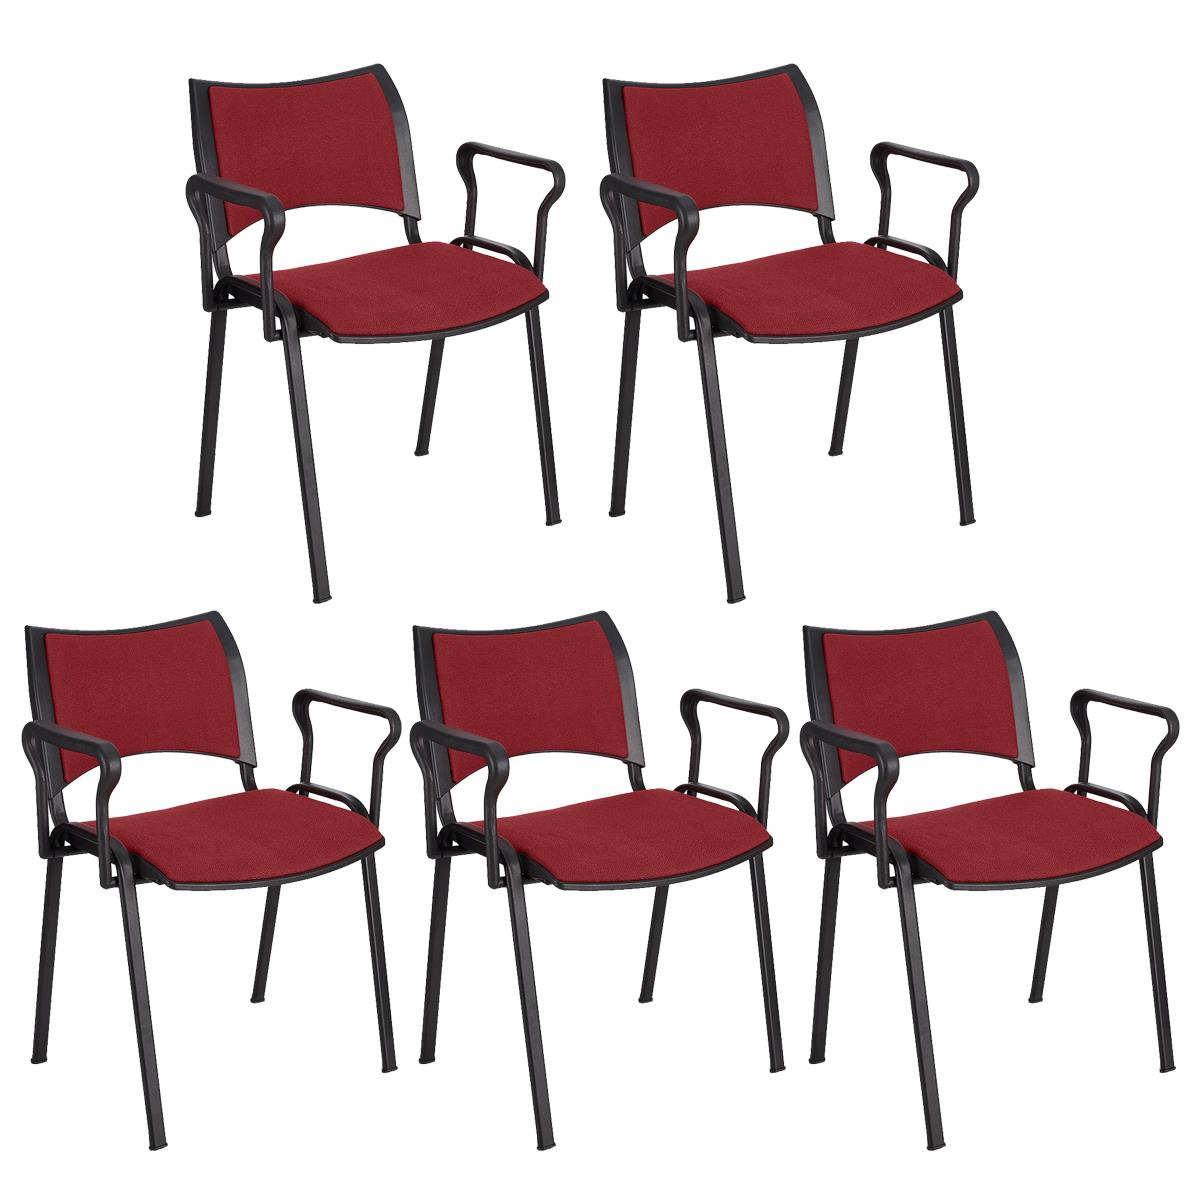 Lote 5 Cadeiras de Visita ROMEL COM BRAÇOS, Empilhável, Pernas Pretas, Em Pano, Bordeaux